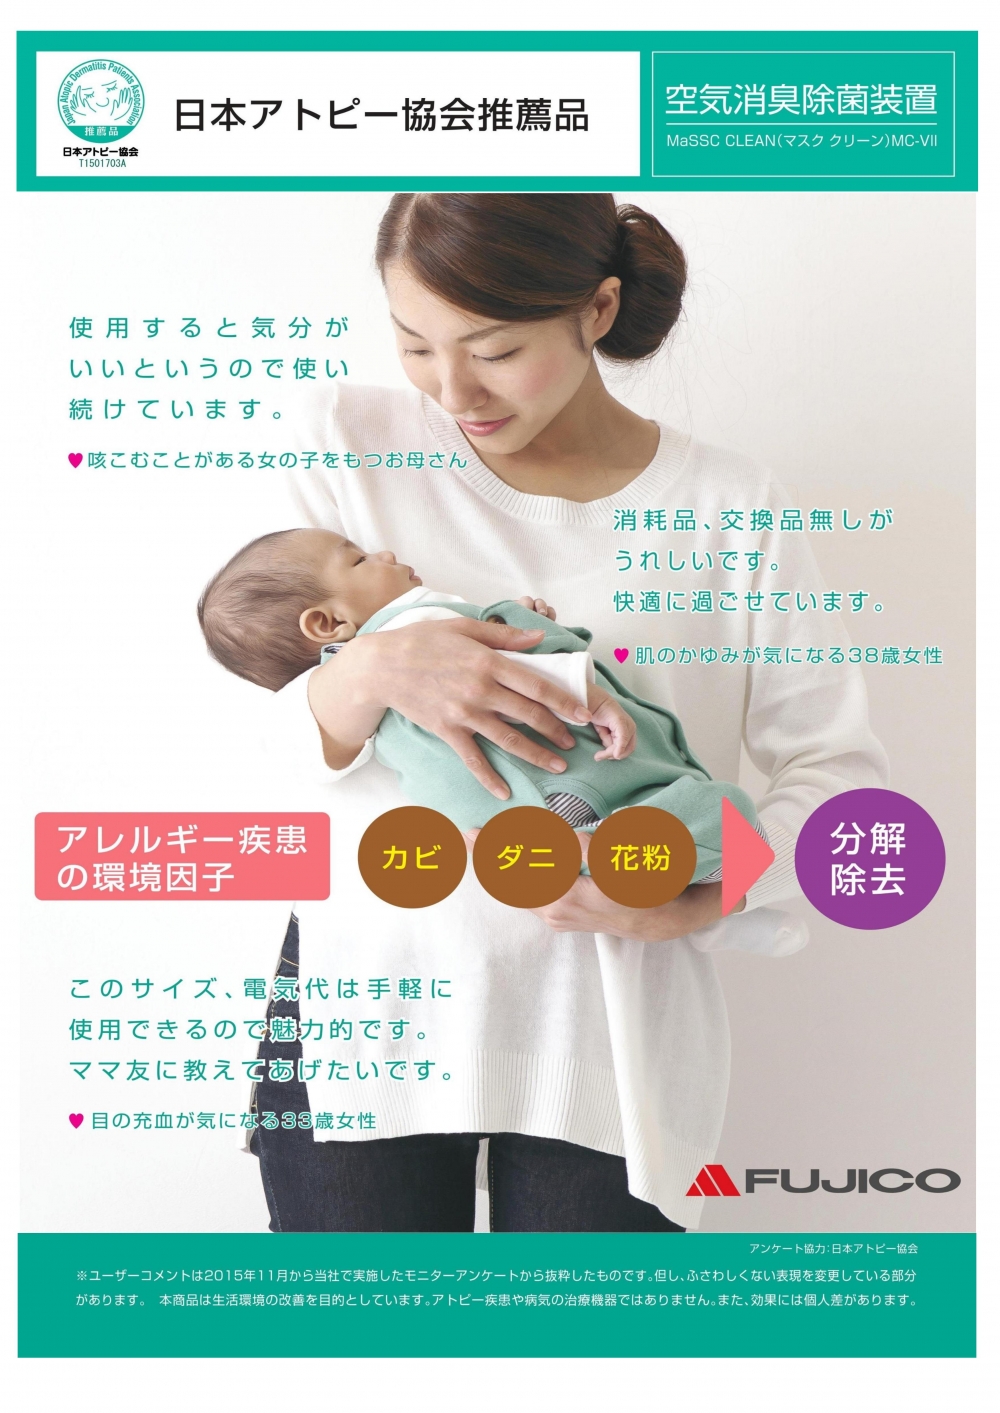 当社の「空気消臭除菌装置マスククリーン」シリーズが、「日本アトピー協会推薦品」として認定されました。【2015.01.25】